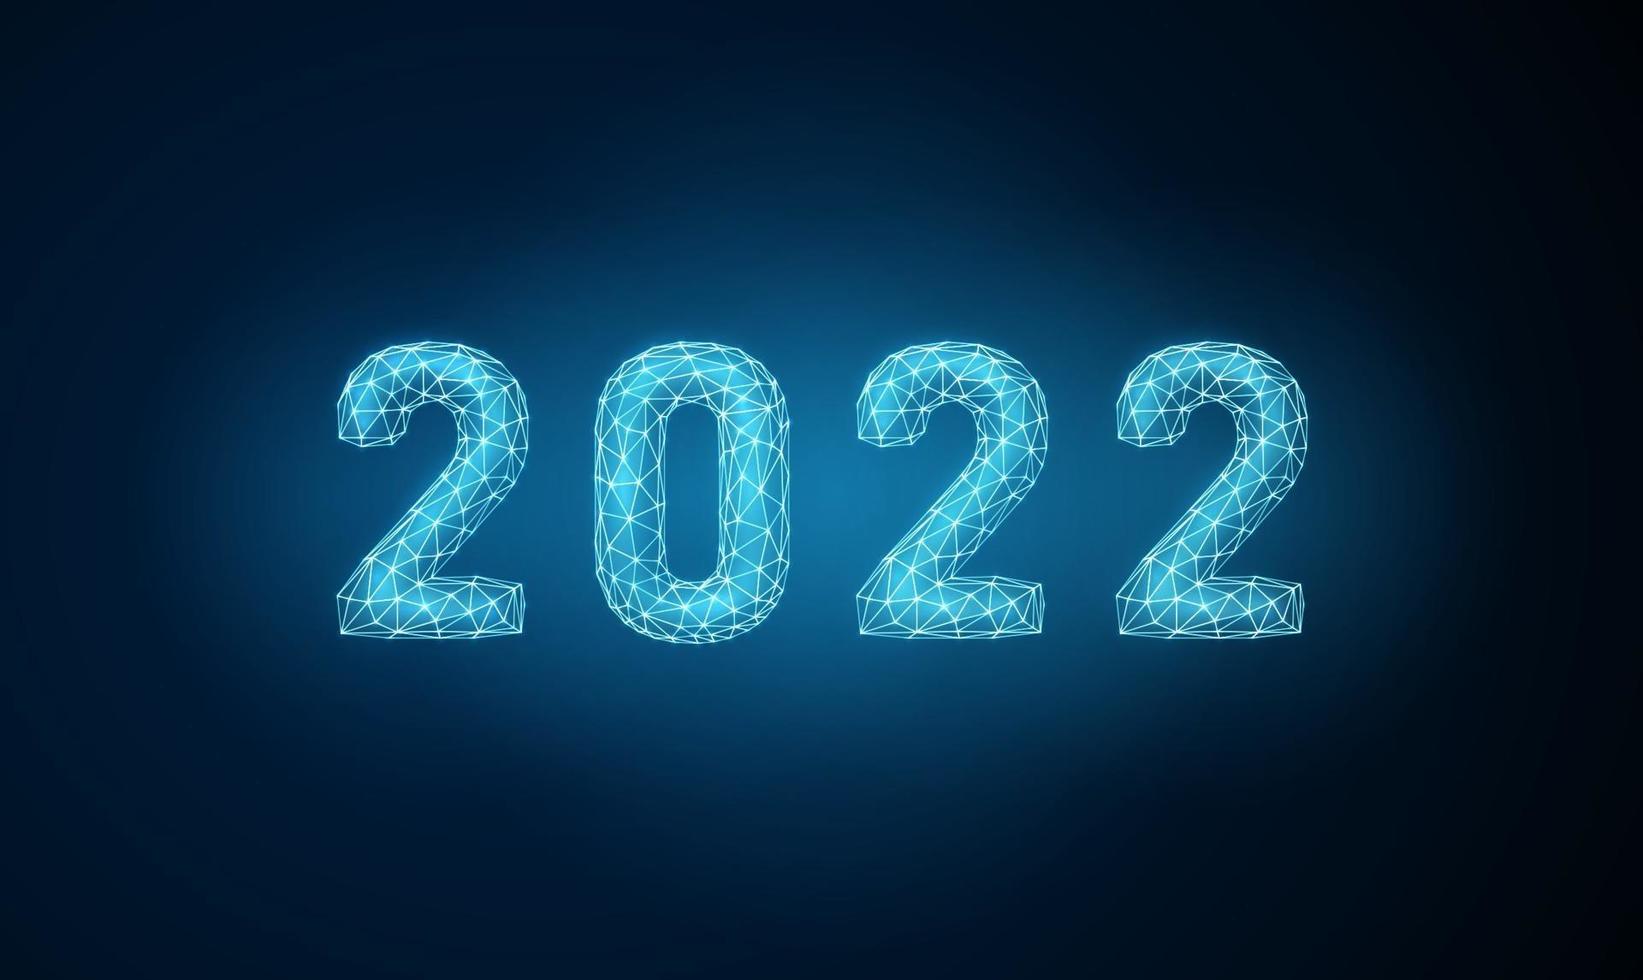 abstrakt lyckligt nytt år 2022 gratulationskort vektor